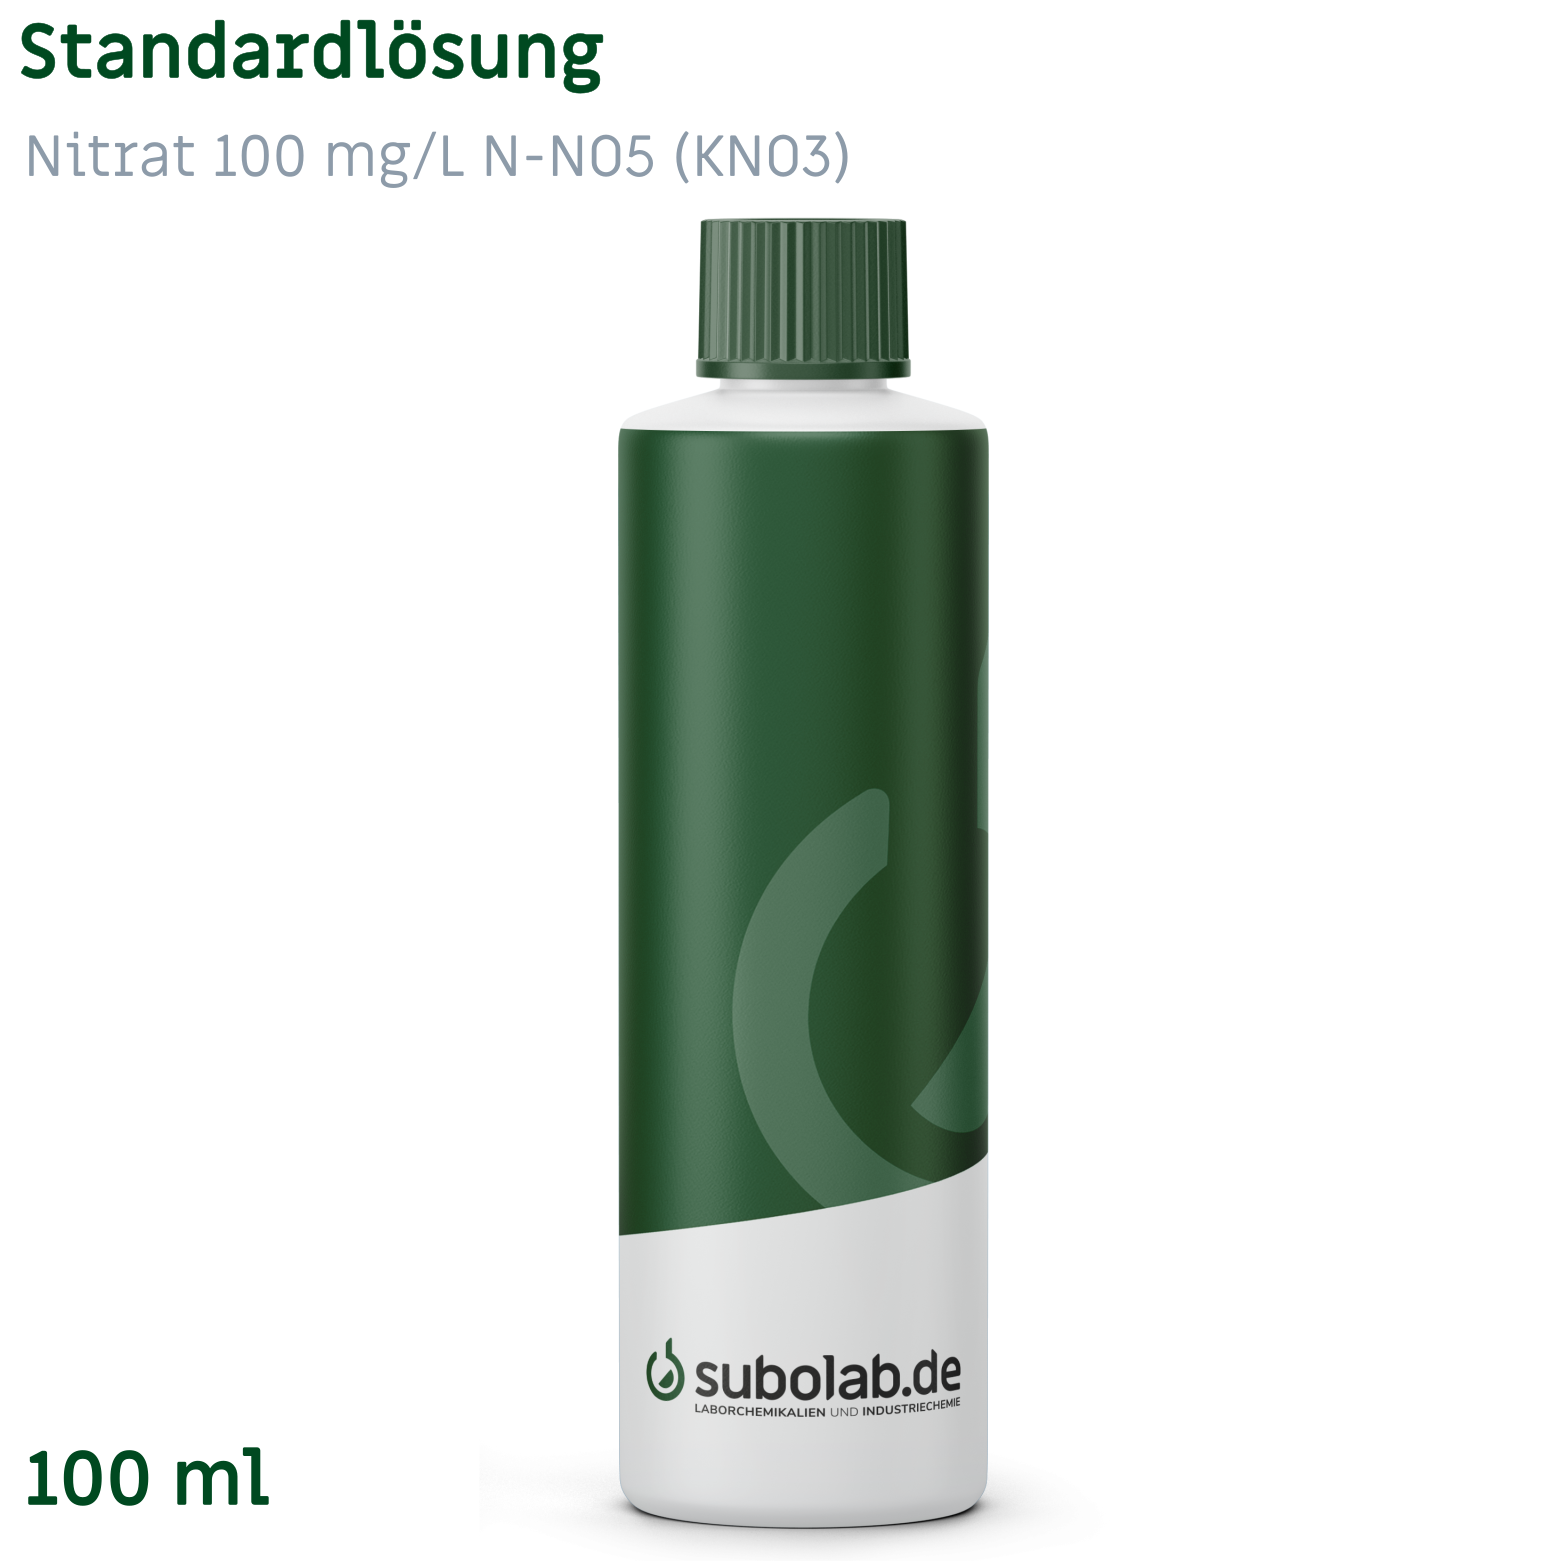 Bild von Standardlösung Nitrat 100 mg/L NO3 (KNO3) (100 ml)